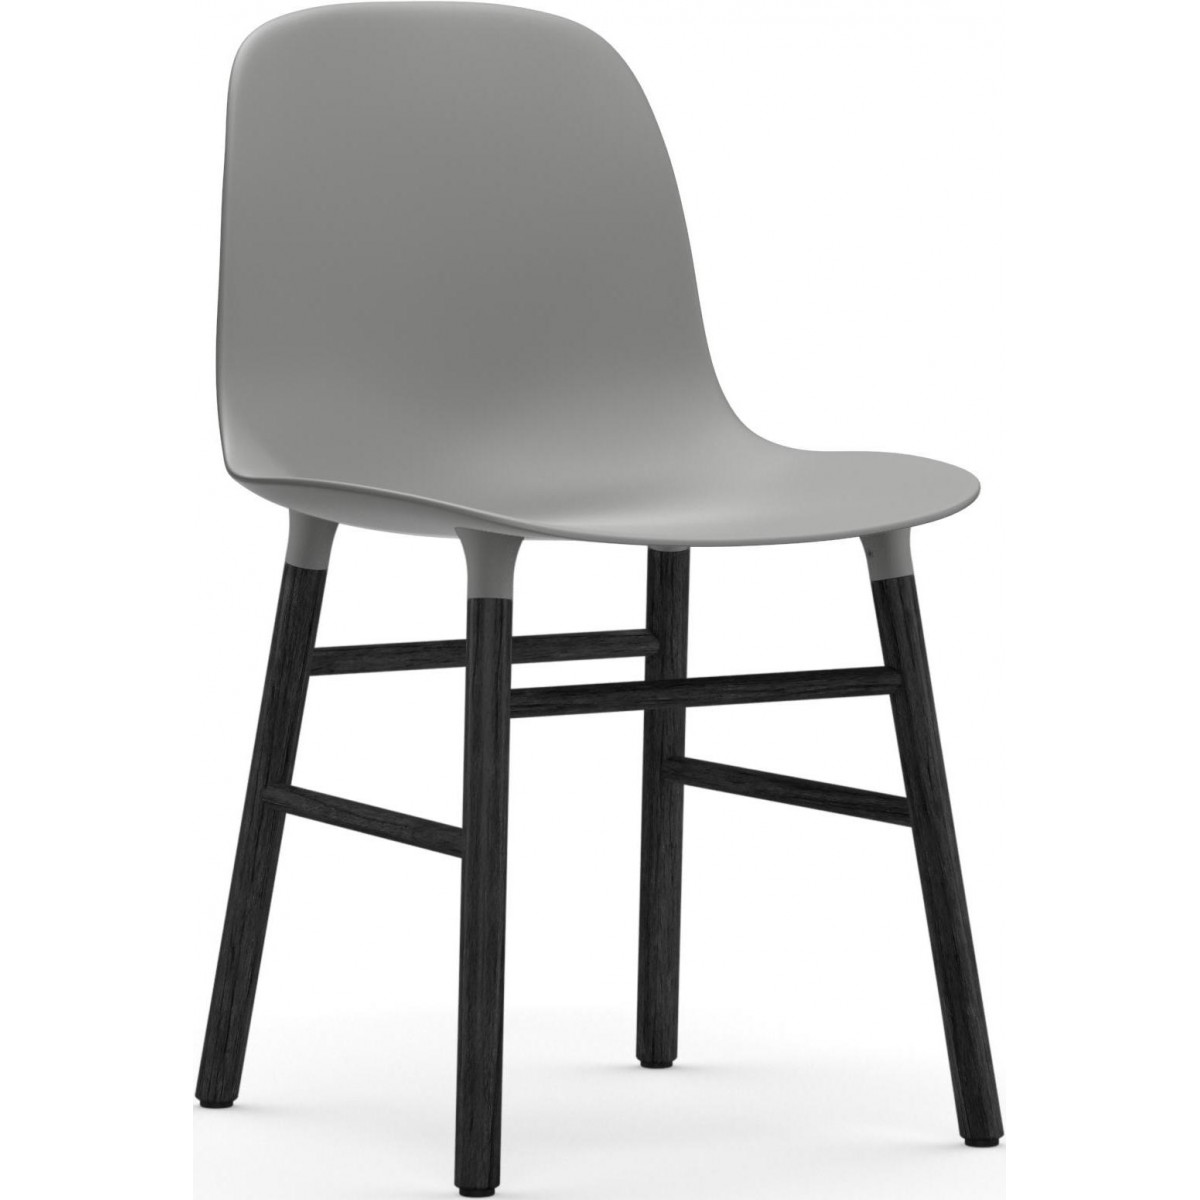 Gris / Chêne peint en noir – Chaise Form